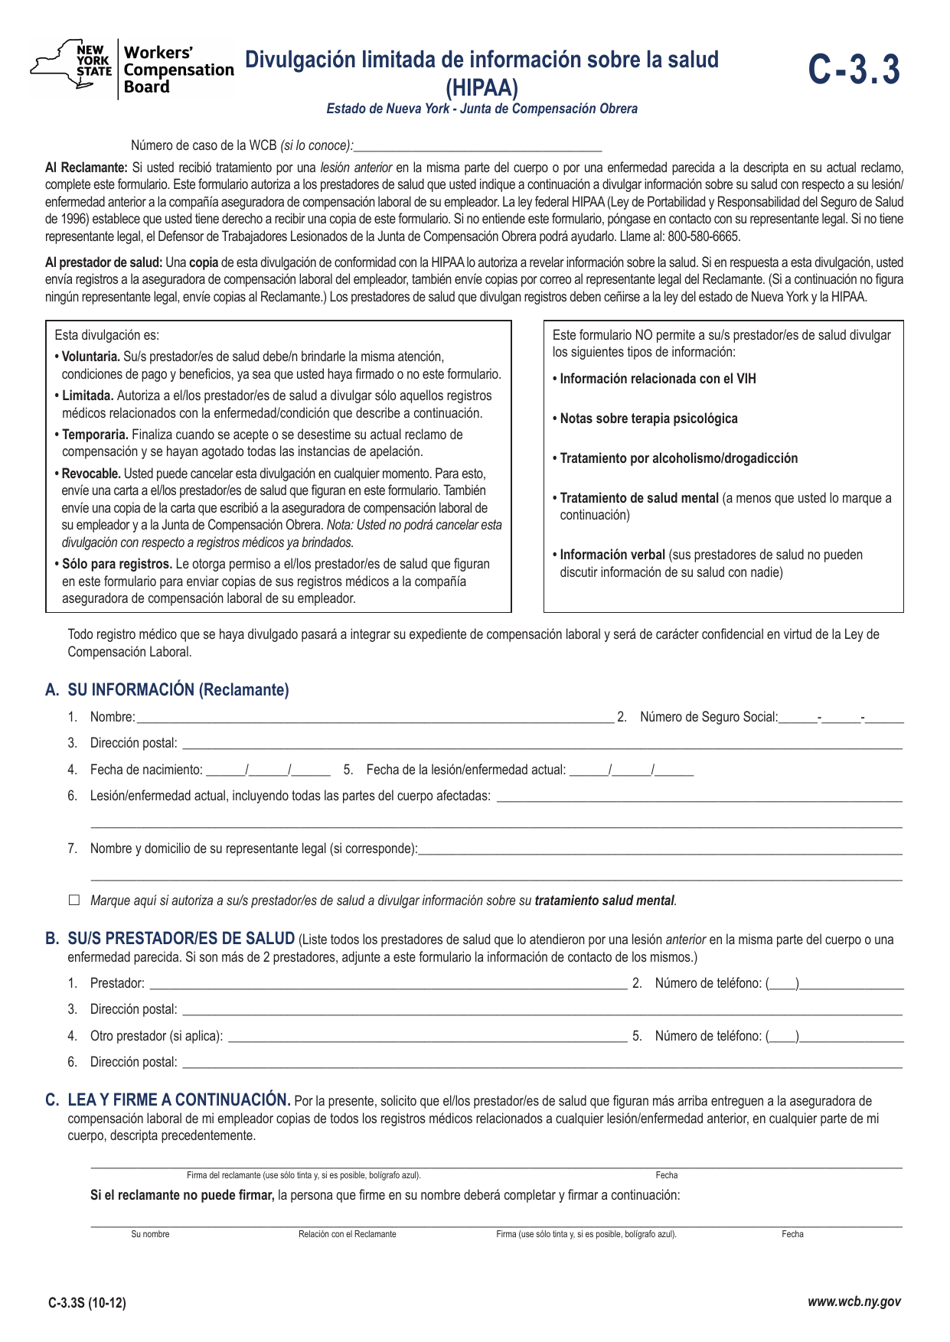 Formulario C-3.3 Divulgacion Limitada De Informacion Sobre La Salud (HIPAA) - New York (Spanish), Page 1